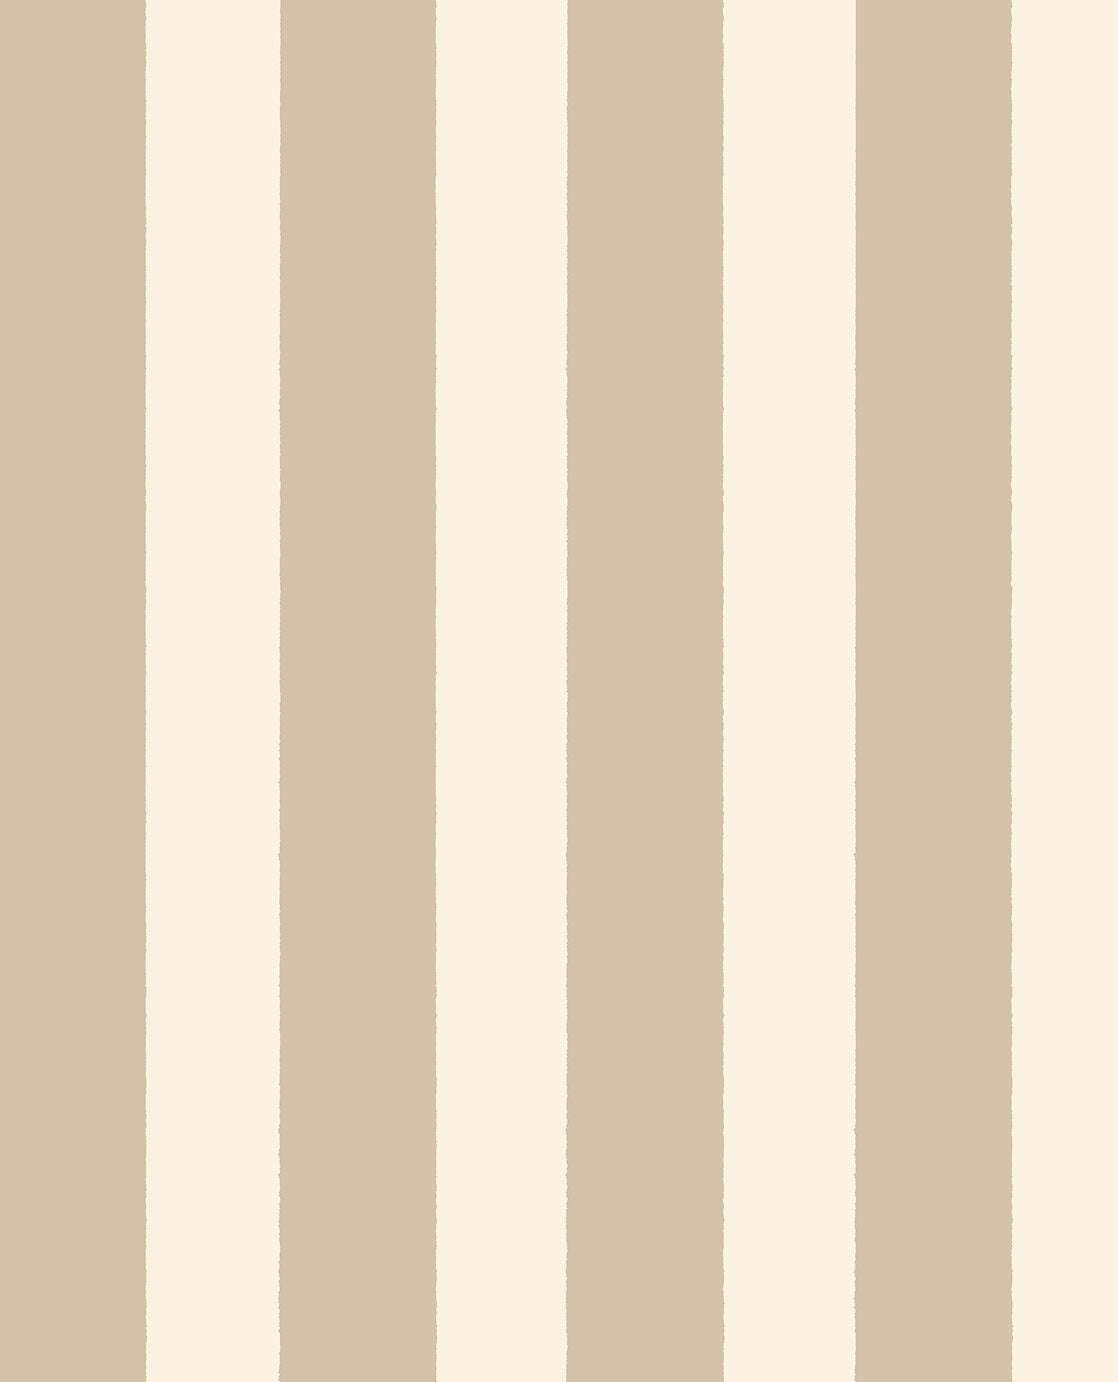 Explore Stripe wallpaper